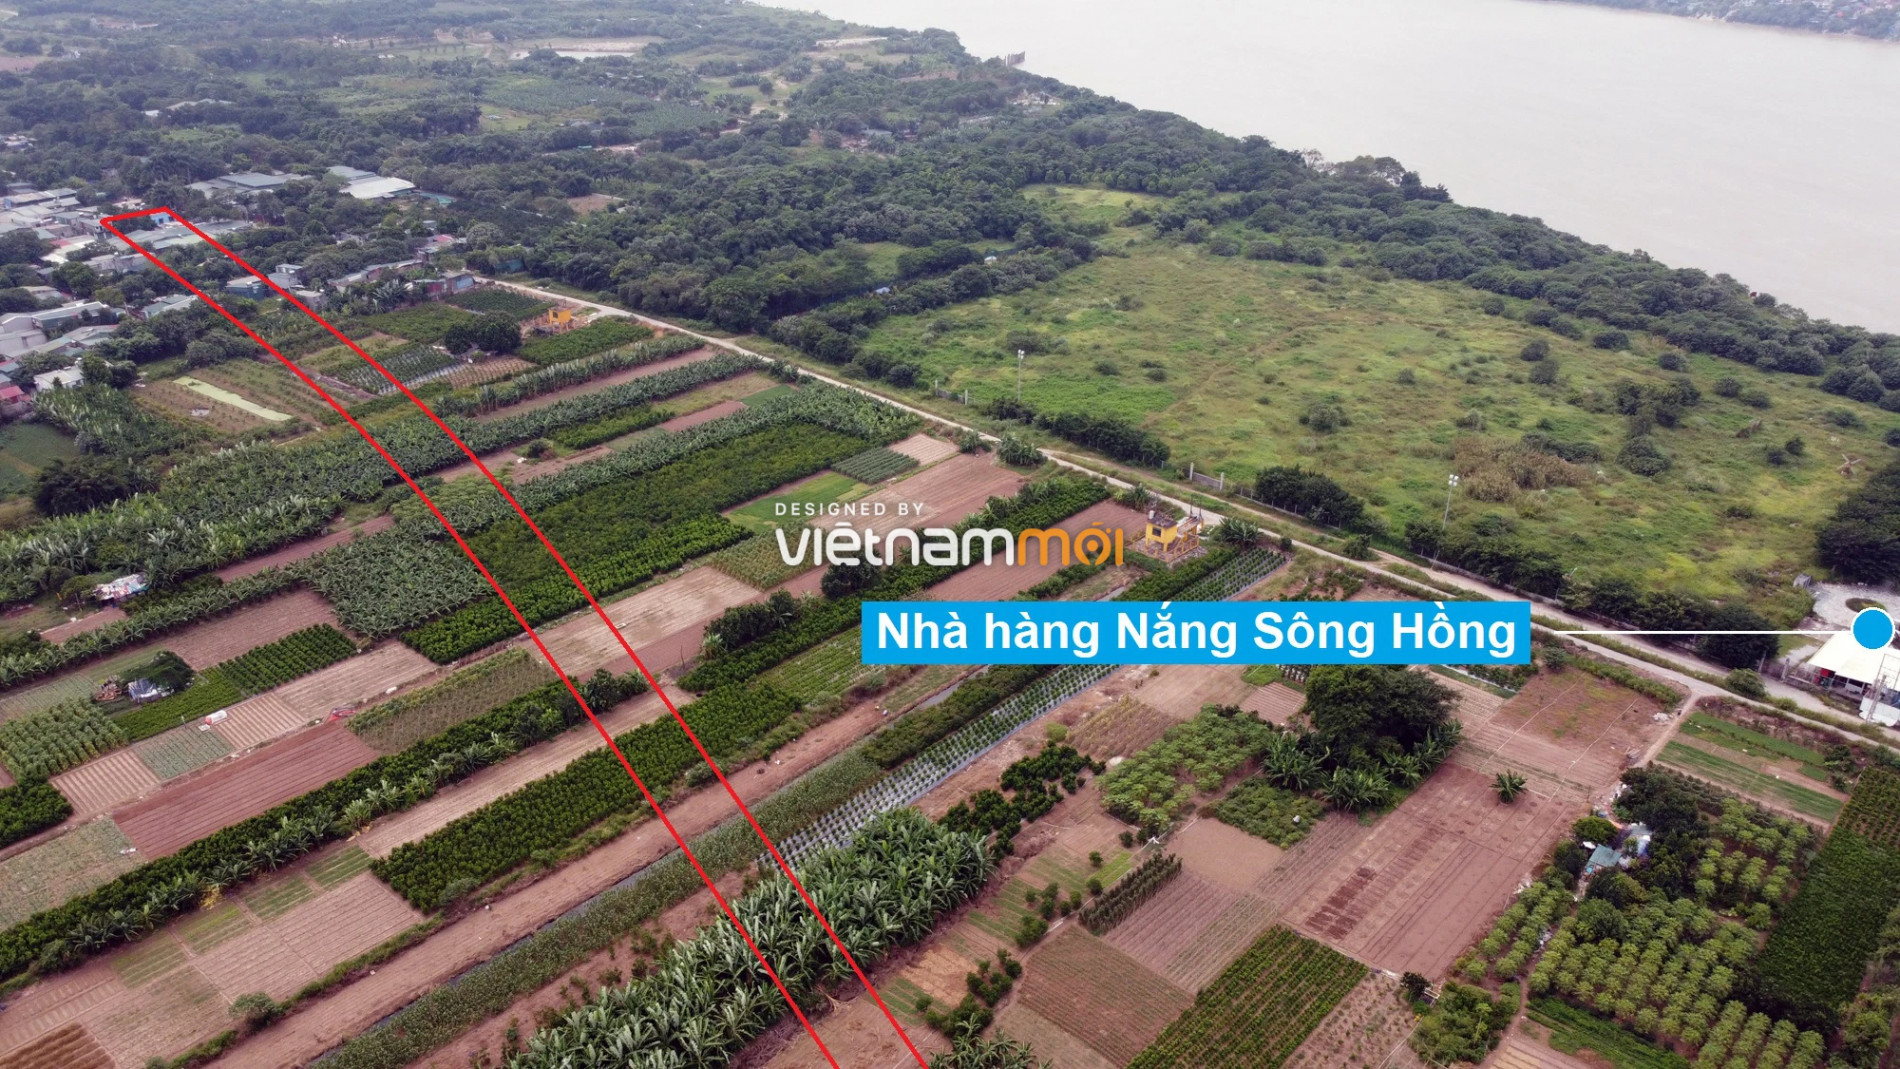 Những khu đất sắp thu hồi để mở đường ở phường Long Biên, Long Biên, Hà Nội (phần 5) - Ảnh 3.